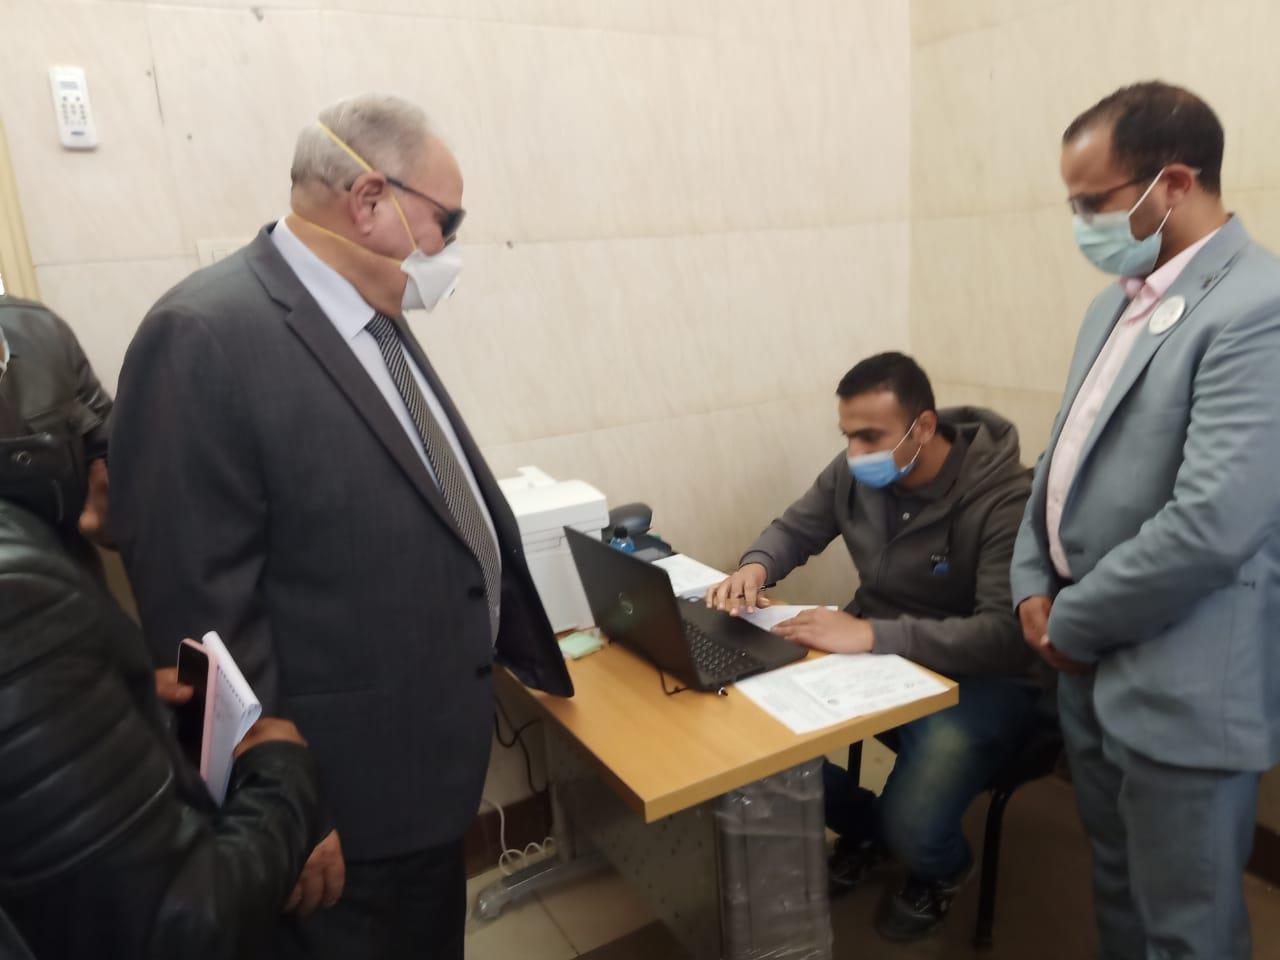 أحمد الزند يتلقى تطعيم كورونا بالقطامية